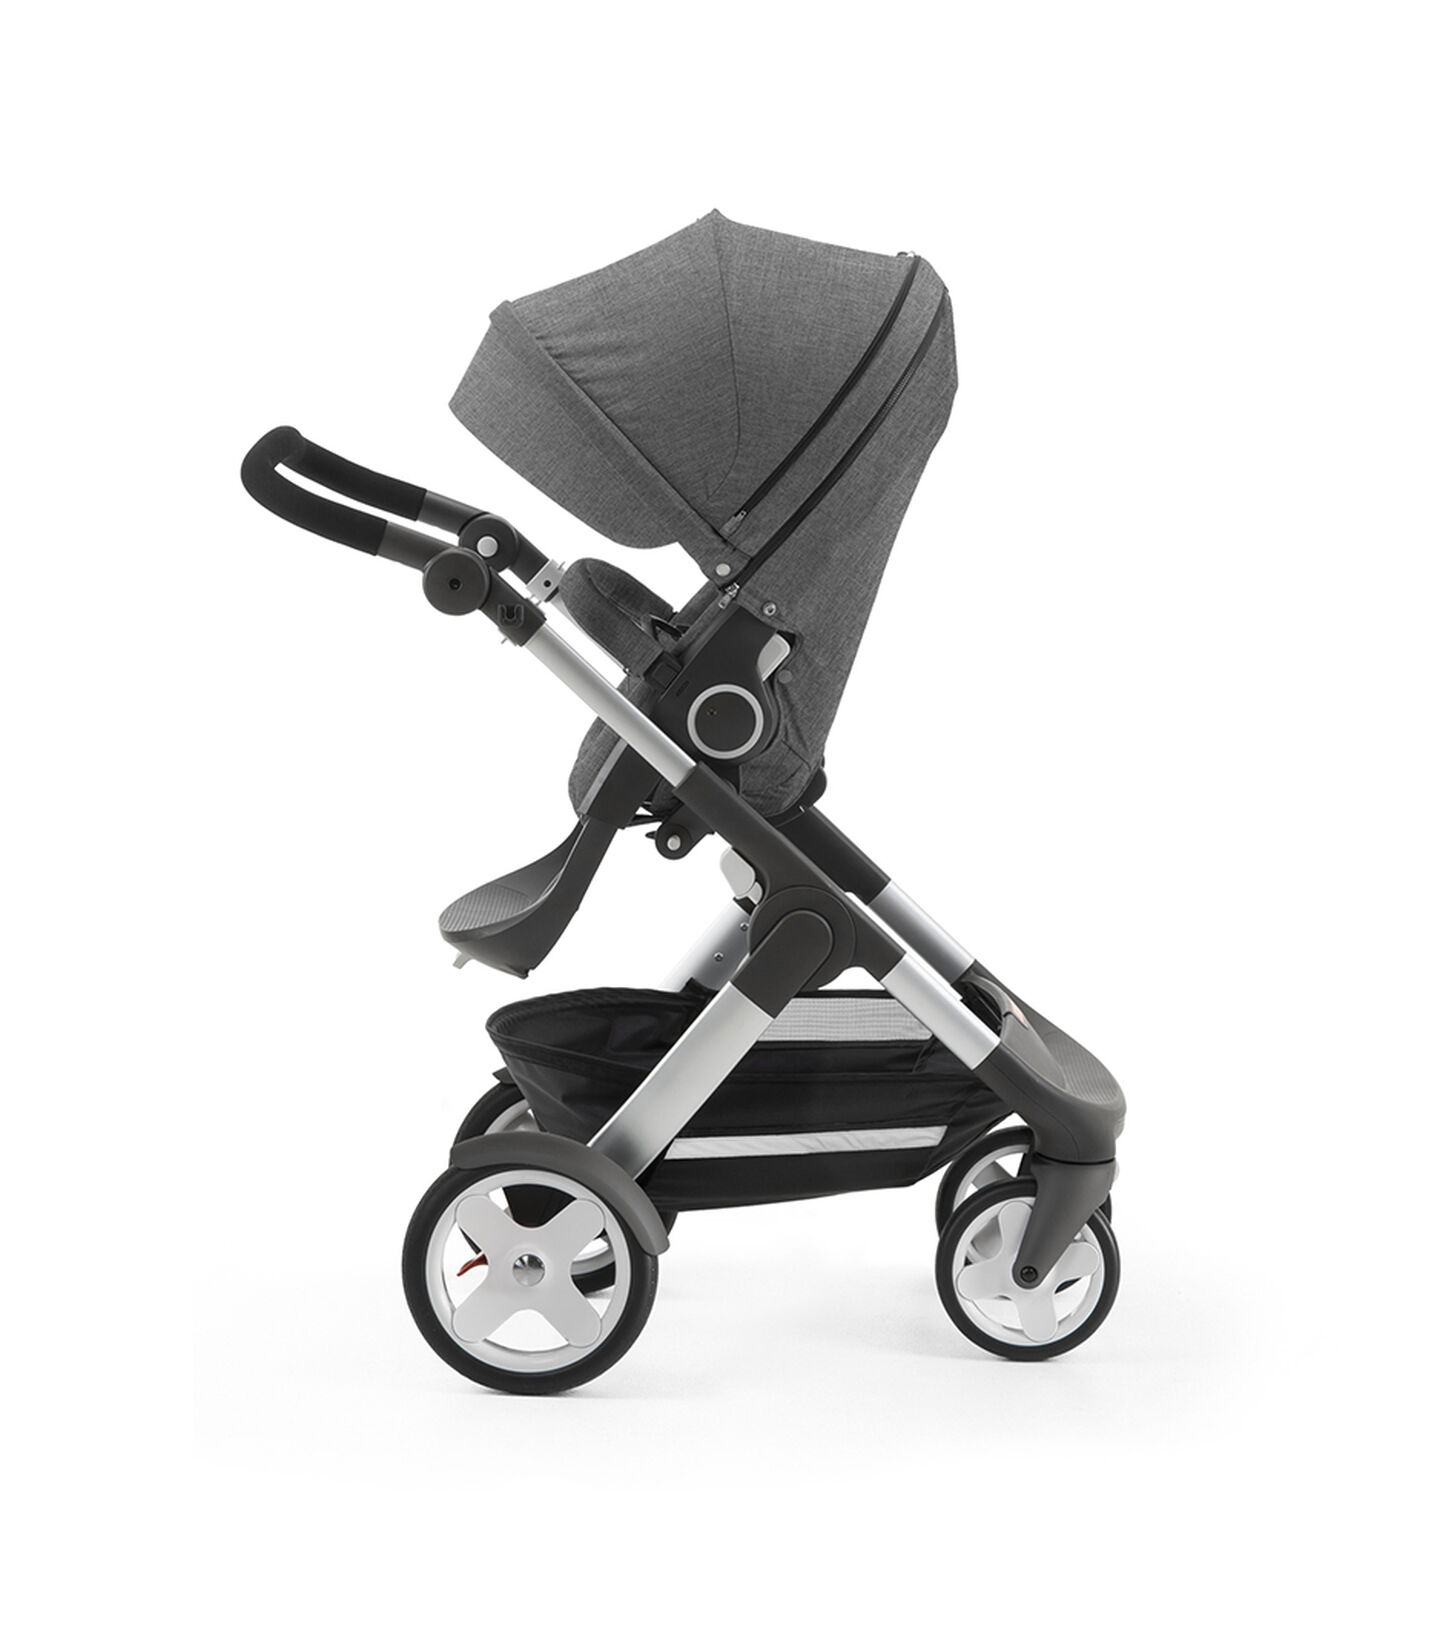 Stokke® Trailz with Stokke® Stroller Seat, parent facing, rest position. Black Melange. view 2